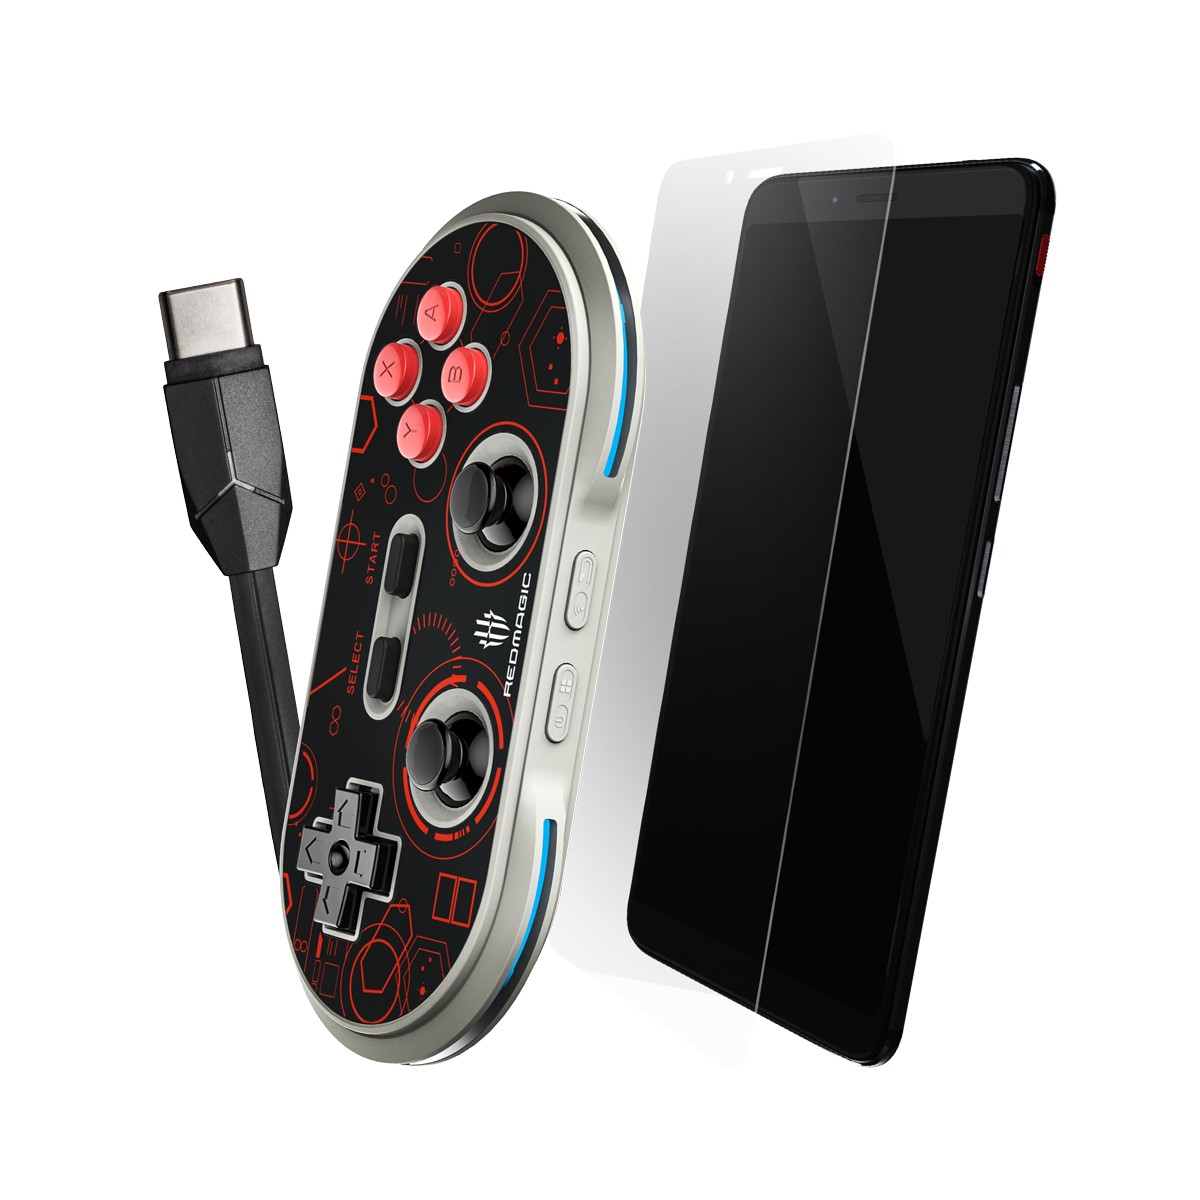 Nubia Red Magic: Verkaufsstart für das Gaming-Smartphone ...
